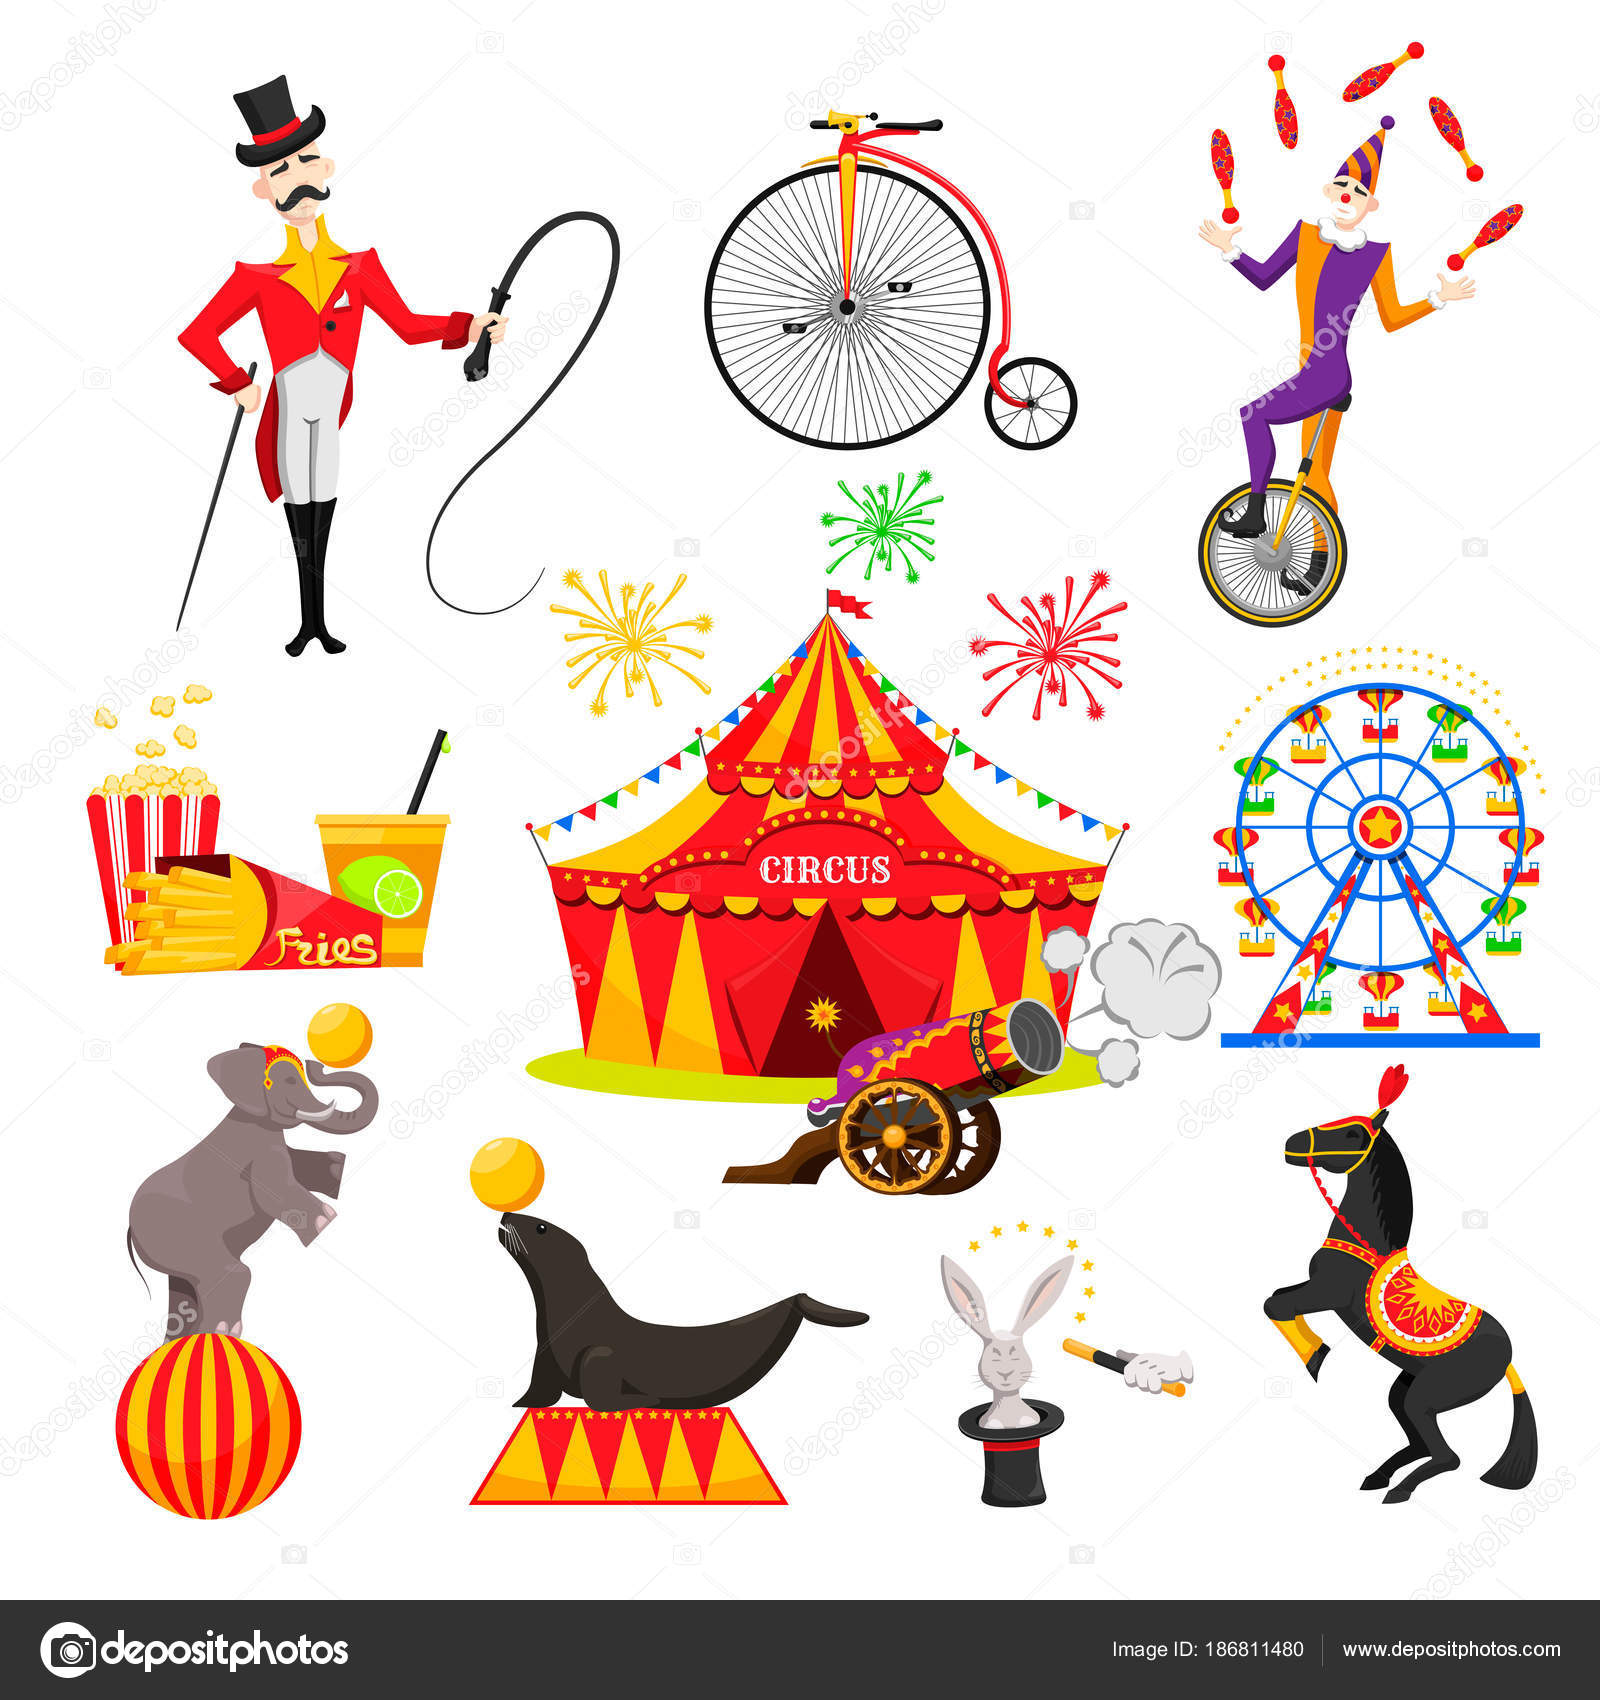 Cartoon circus images Vector Art Stock Images | Depositphotos